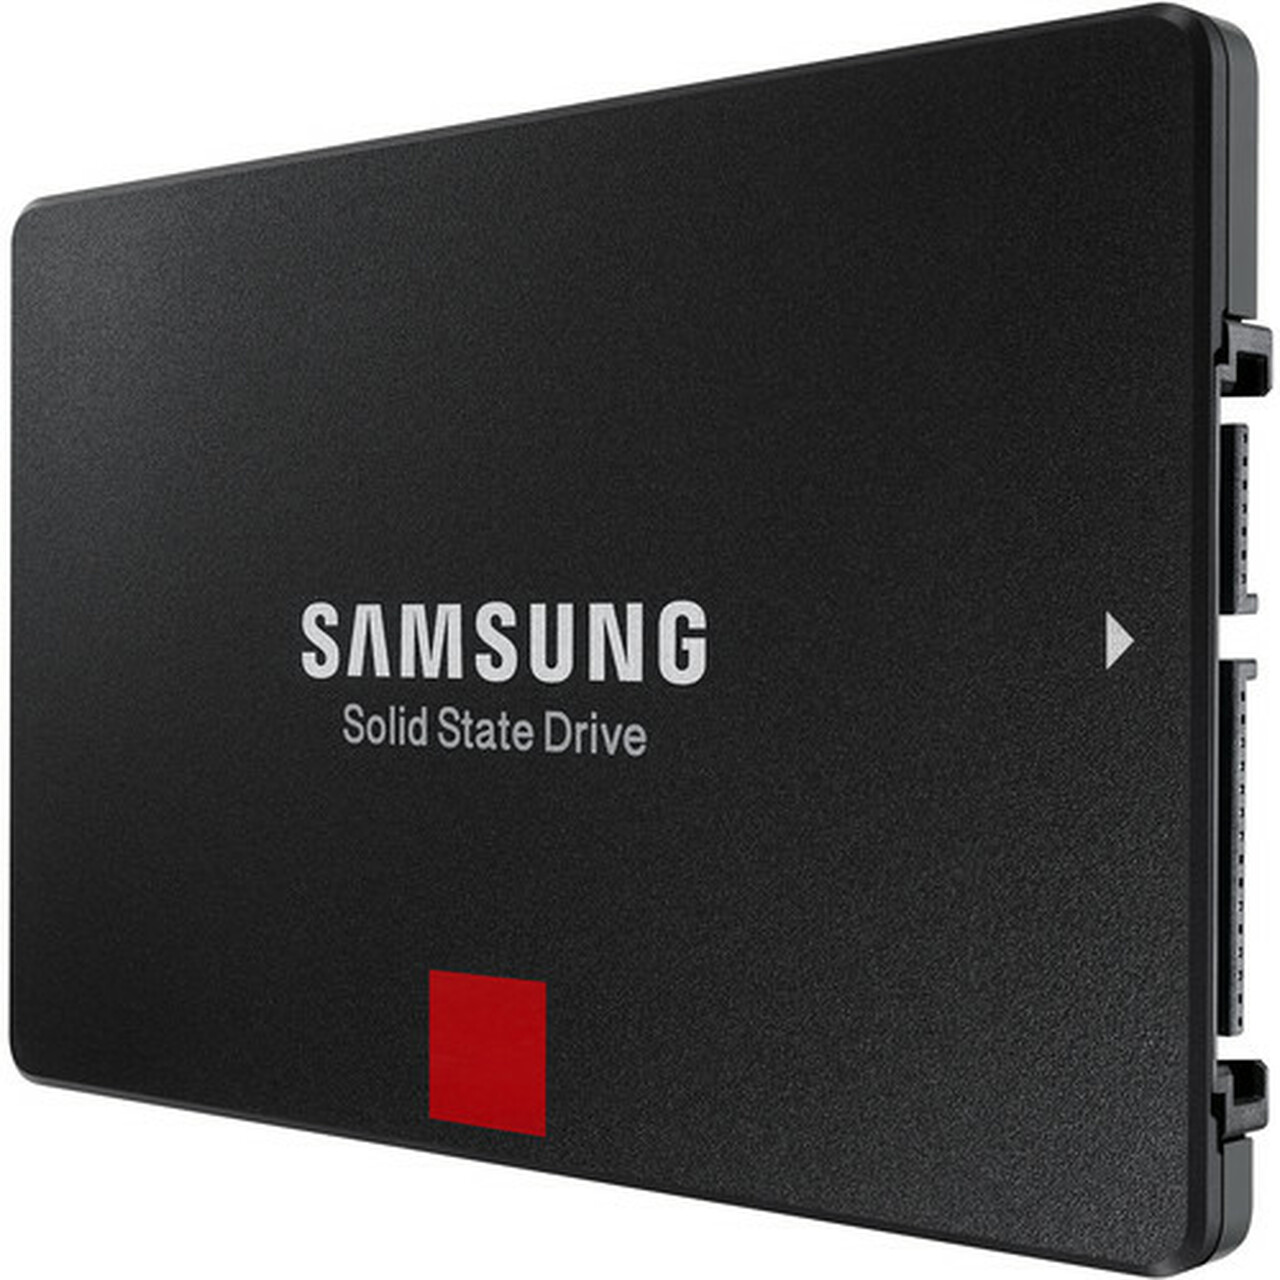 SAMSUNG 860 PRO 512GB INT SSD 2.5 SATA III/REG MZ76P512BW